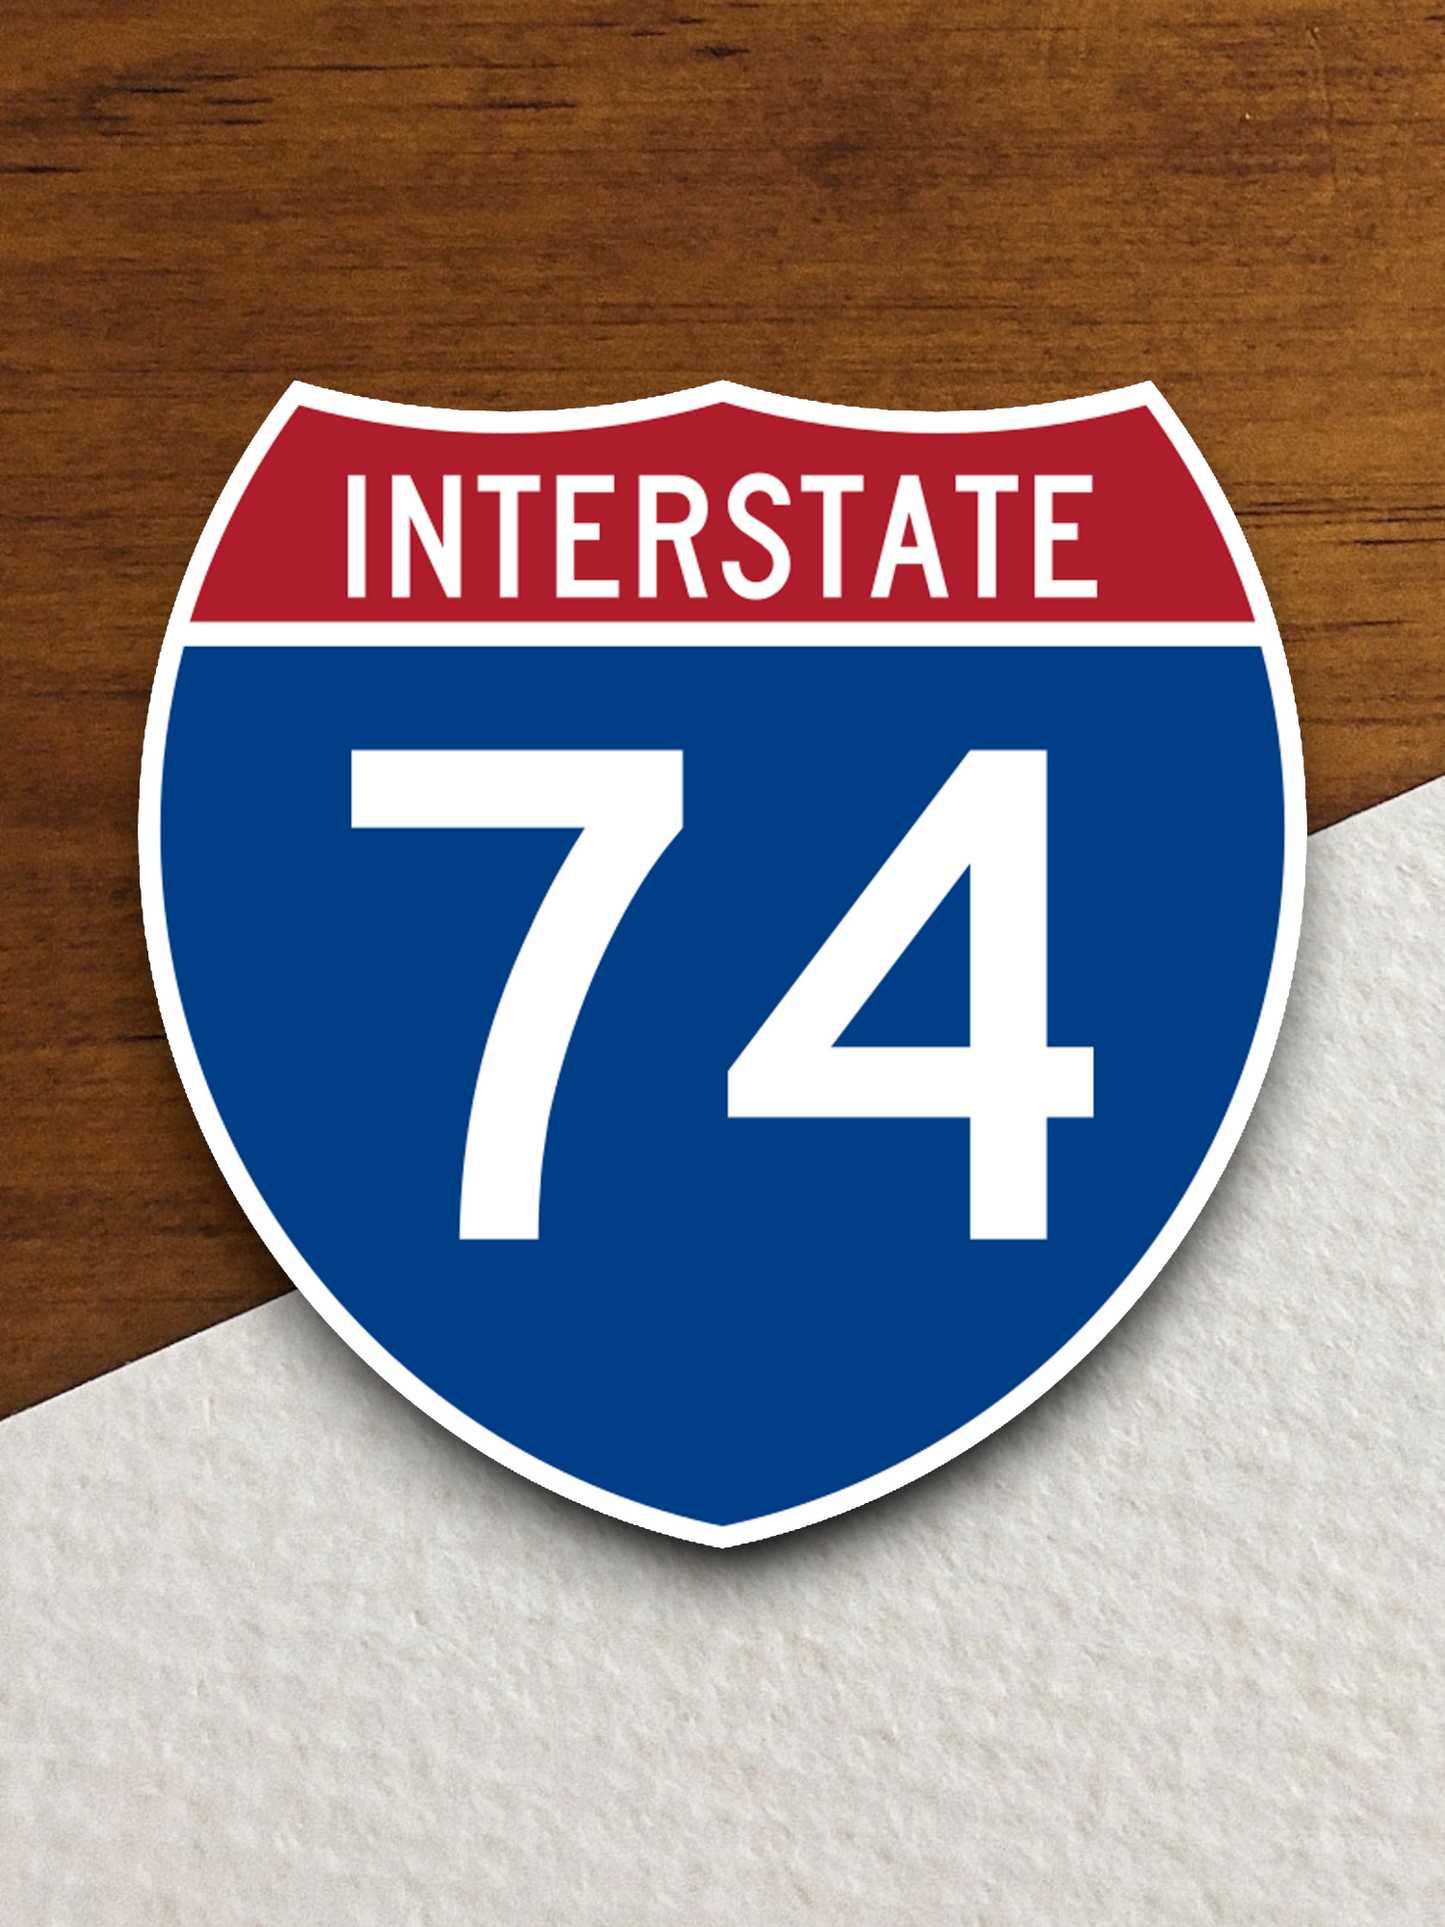 Interstate I-74 Sticker